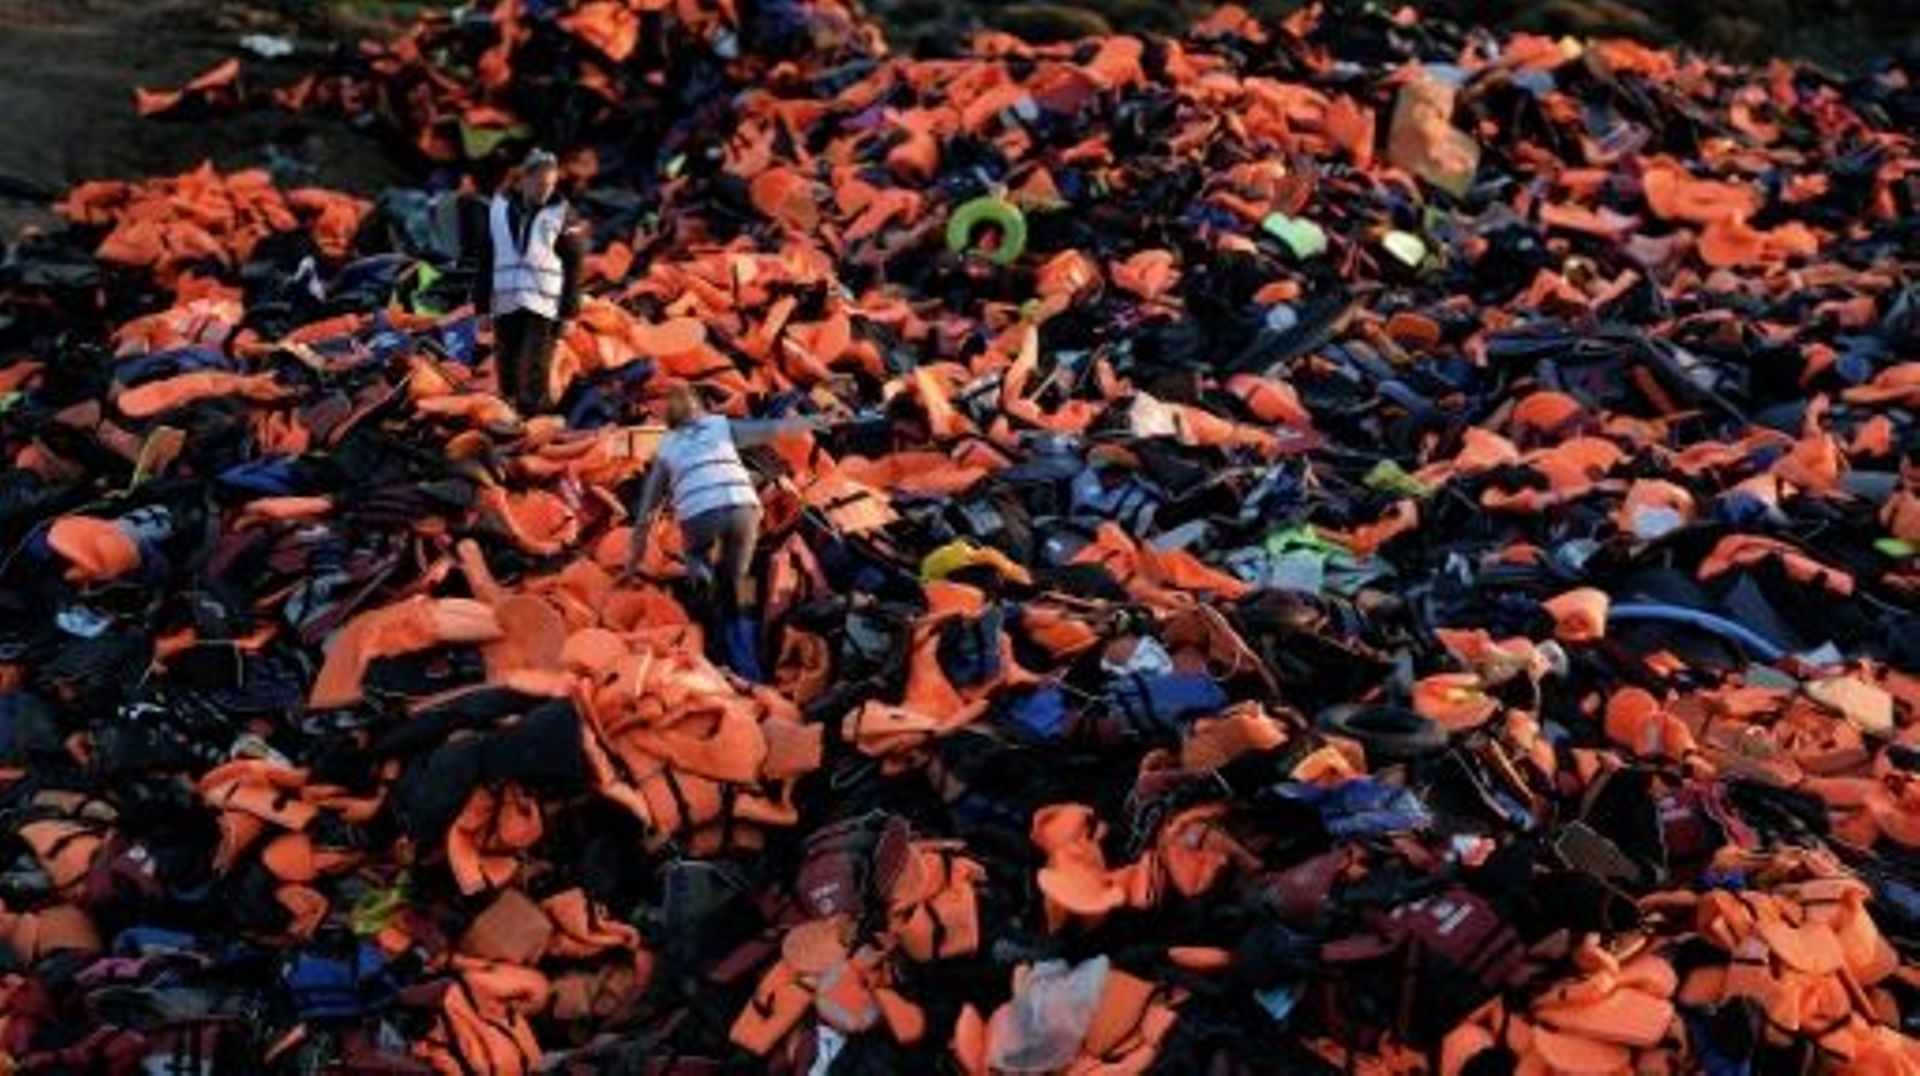 Des gilets de sauvetage laissés par les migrants à leurs arrivées sur l'île grecque de Lesbos, le 3 décembre 2015